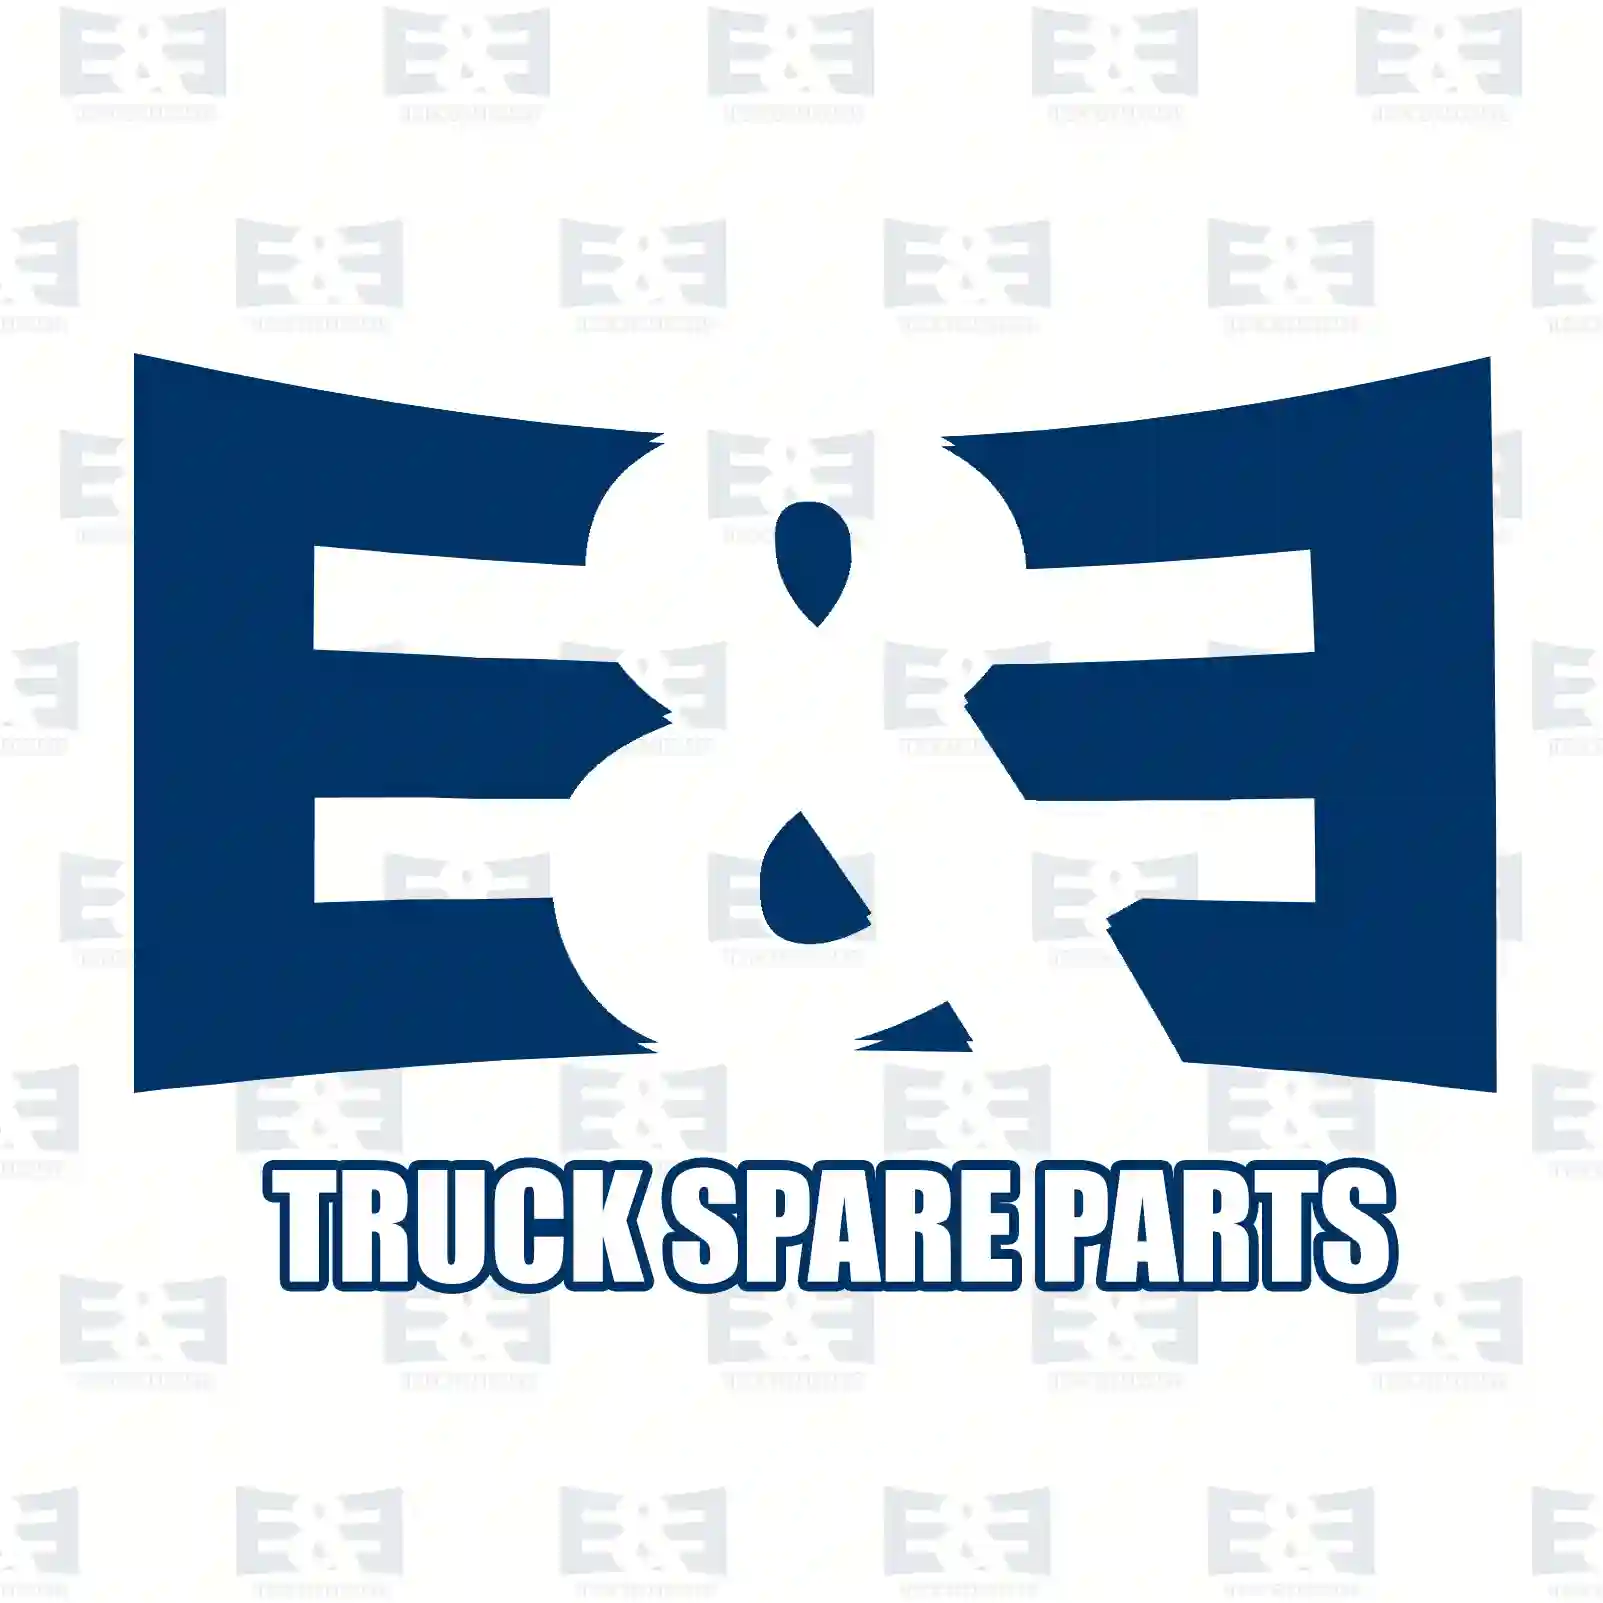 Gear shift lever, 2E2278436, 20481336 ||  2E2278436 E&E Truck Spare Parts | Truck Spare Parts, Auotomotive Spare Parts Gear shift lever, 2E2278436, 20481336 ||  2E2278436 E&E Truck Spare Parts | Truck Spare Parts, Auotomotive Spare Parts